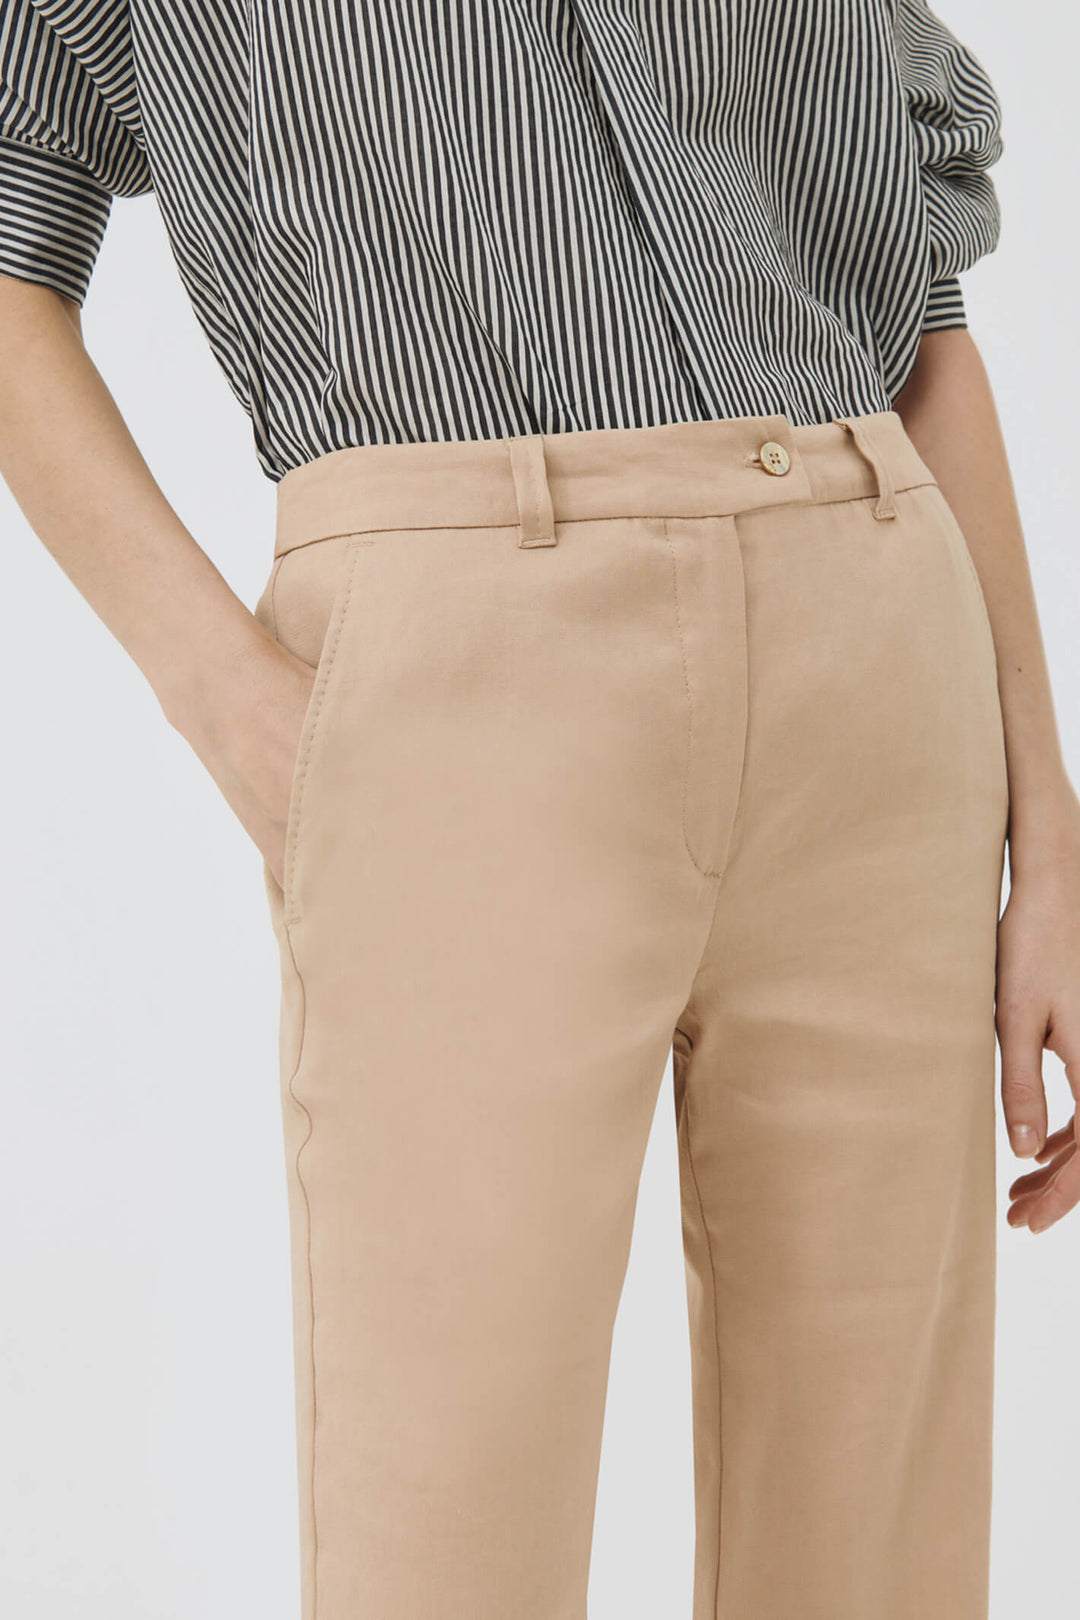 Marella Strada 31312222200 Natural Taupe Long Flared Trousers - Olivia Grace Fashion